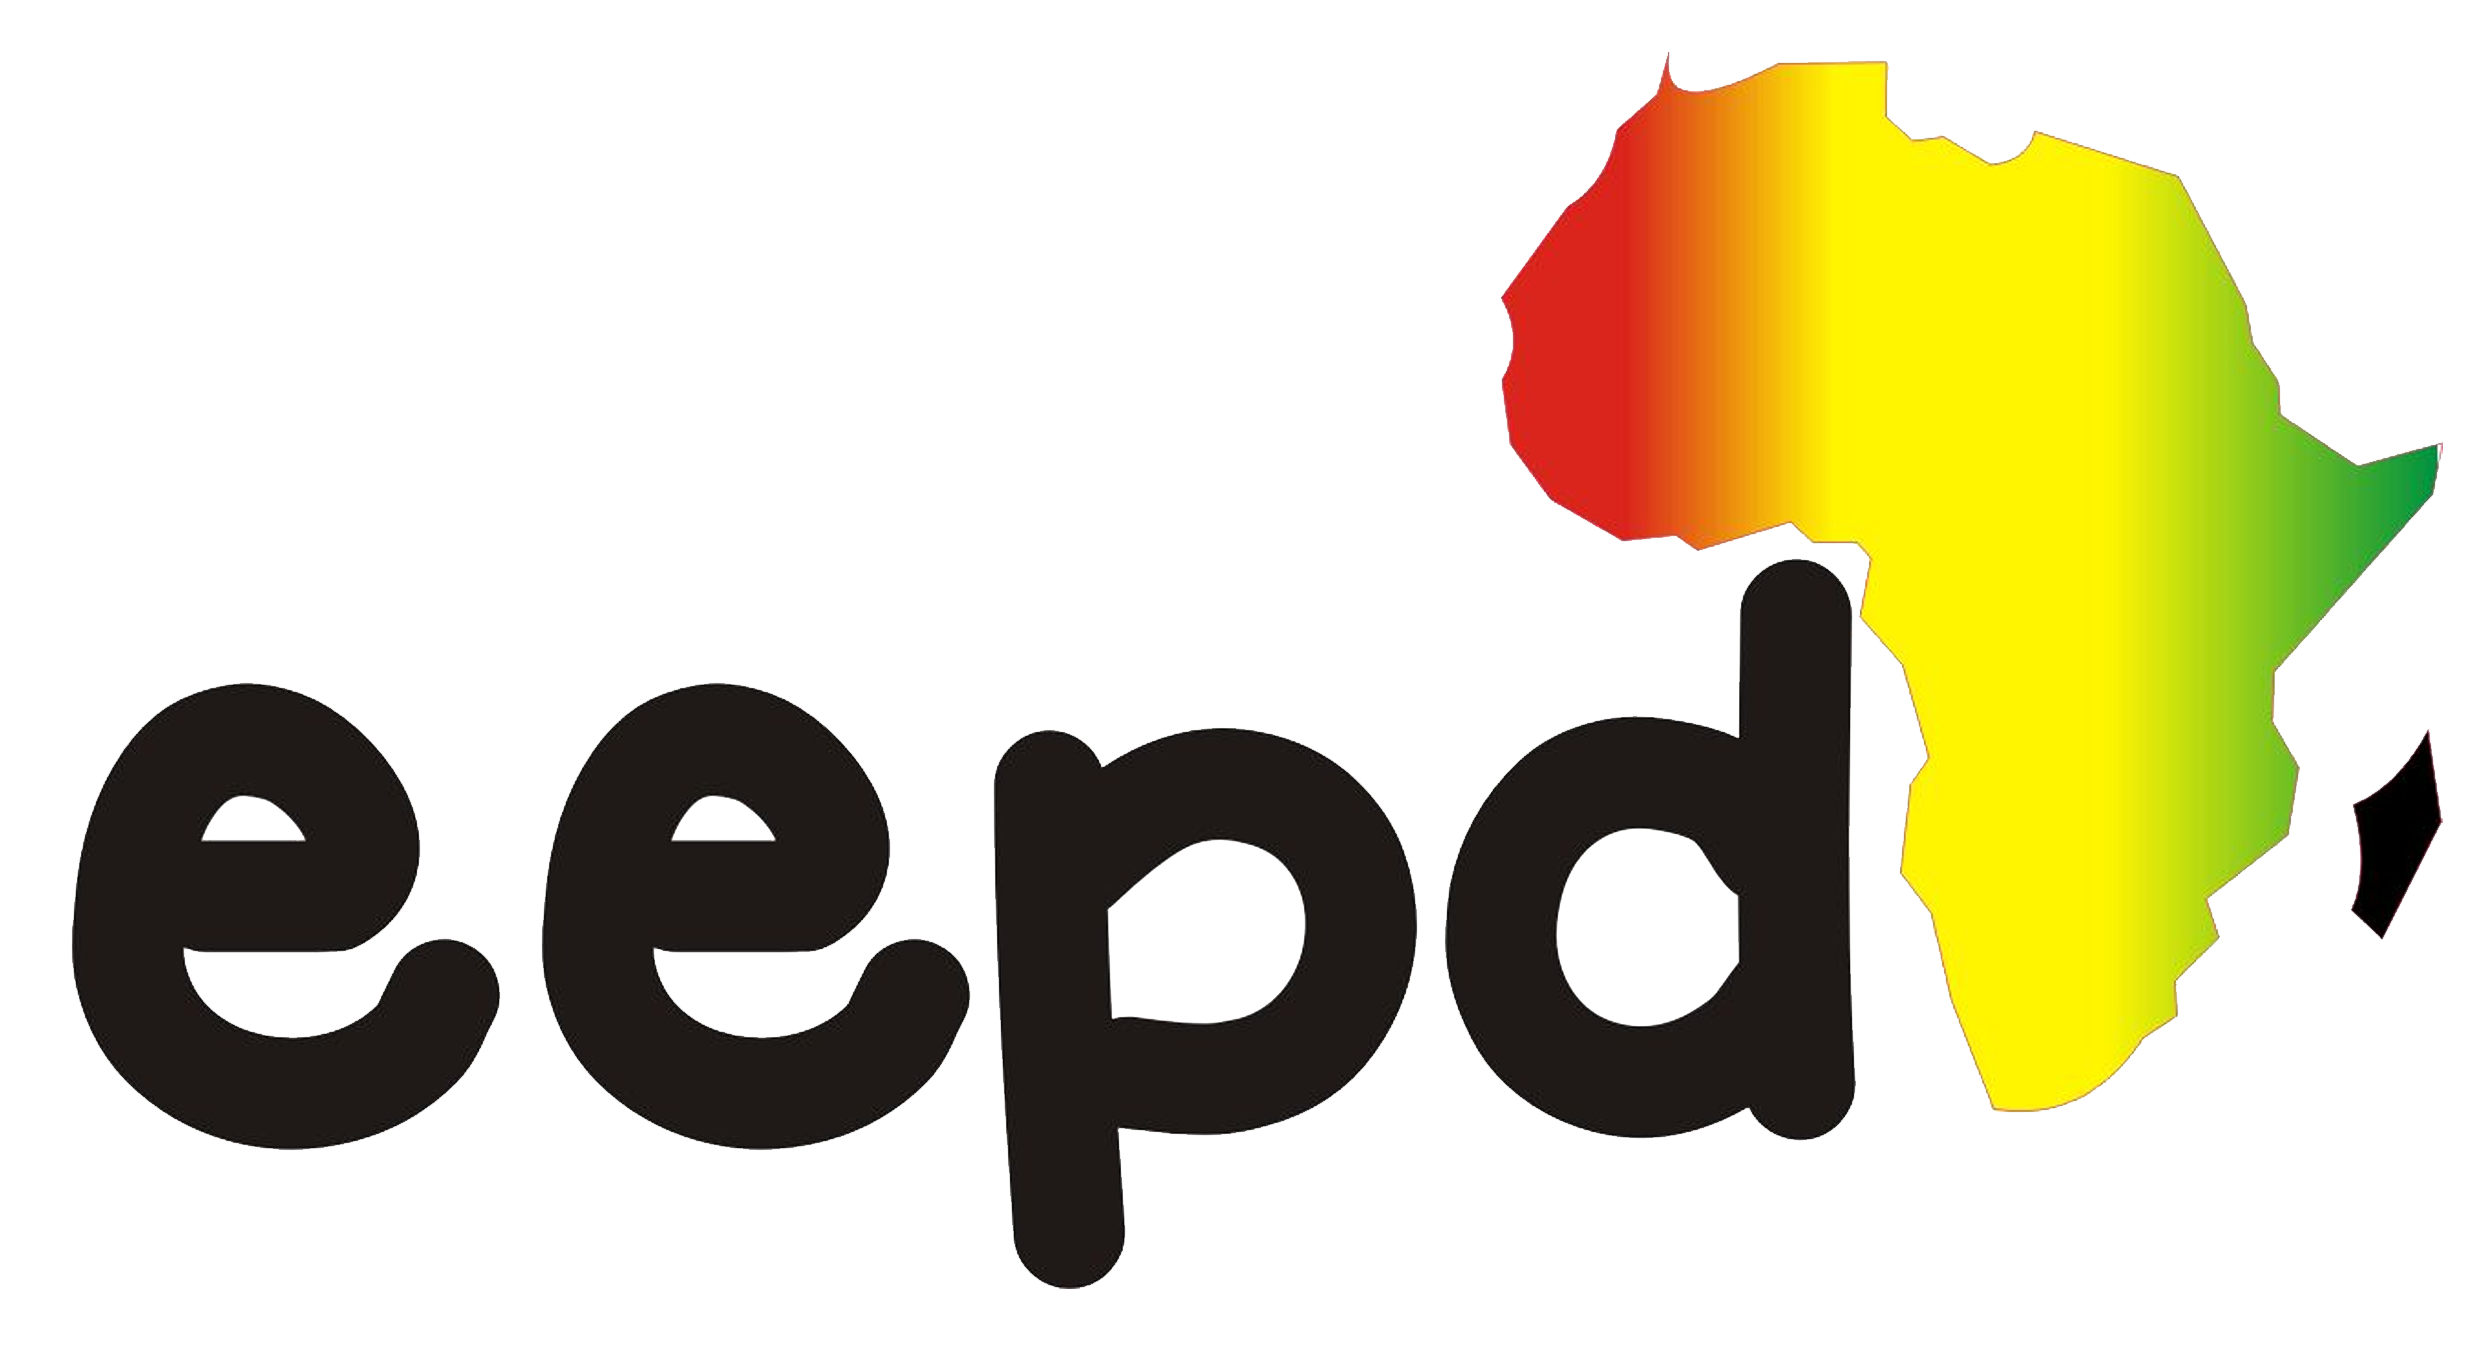 eedpAfrica